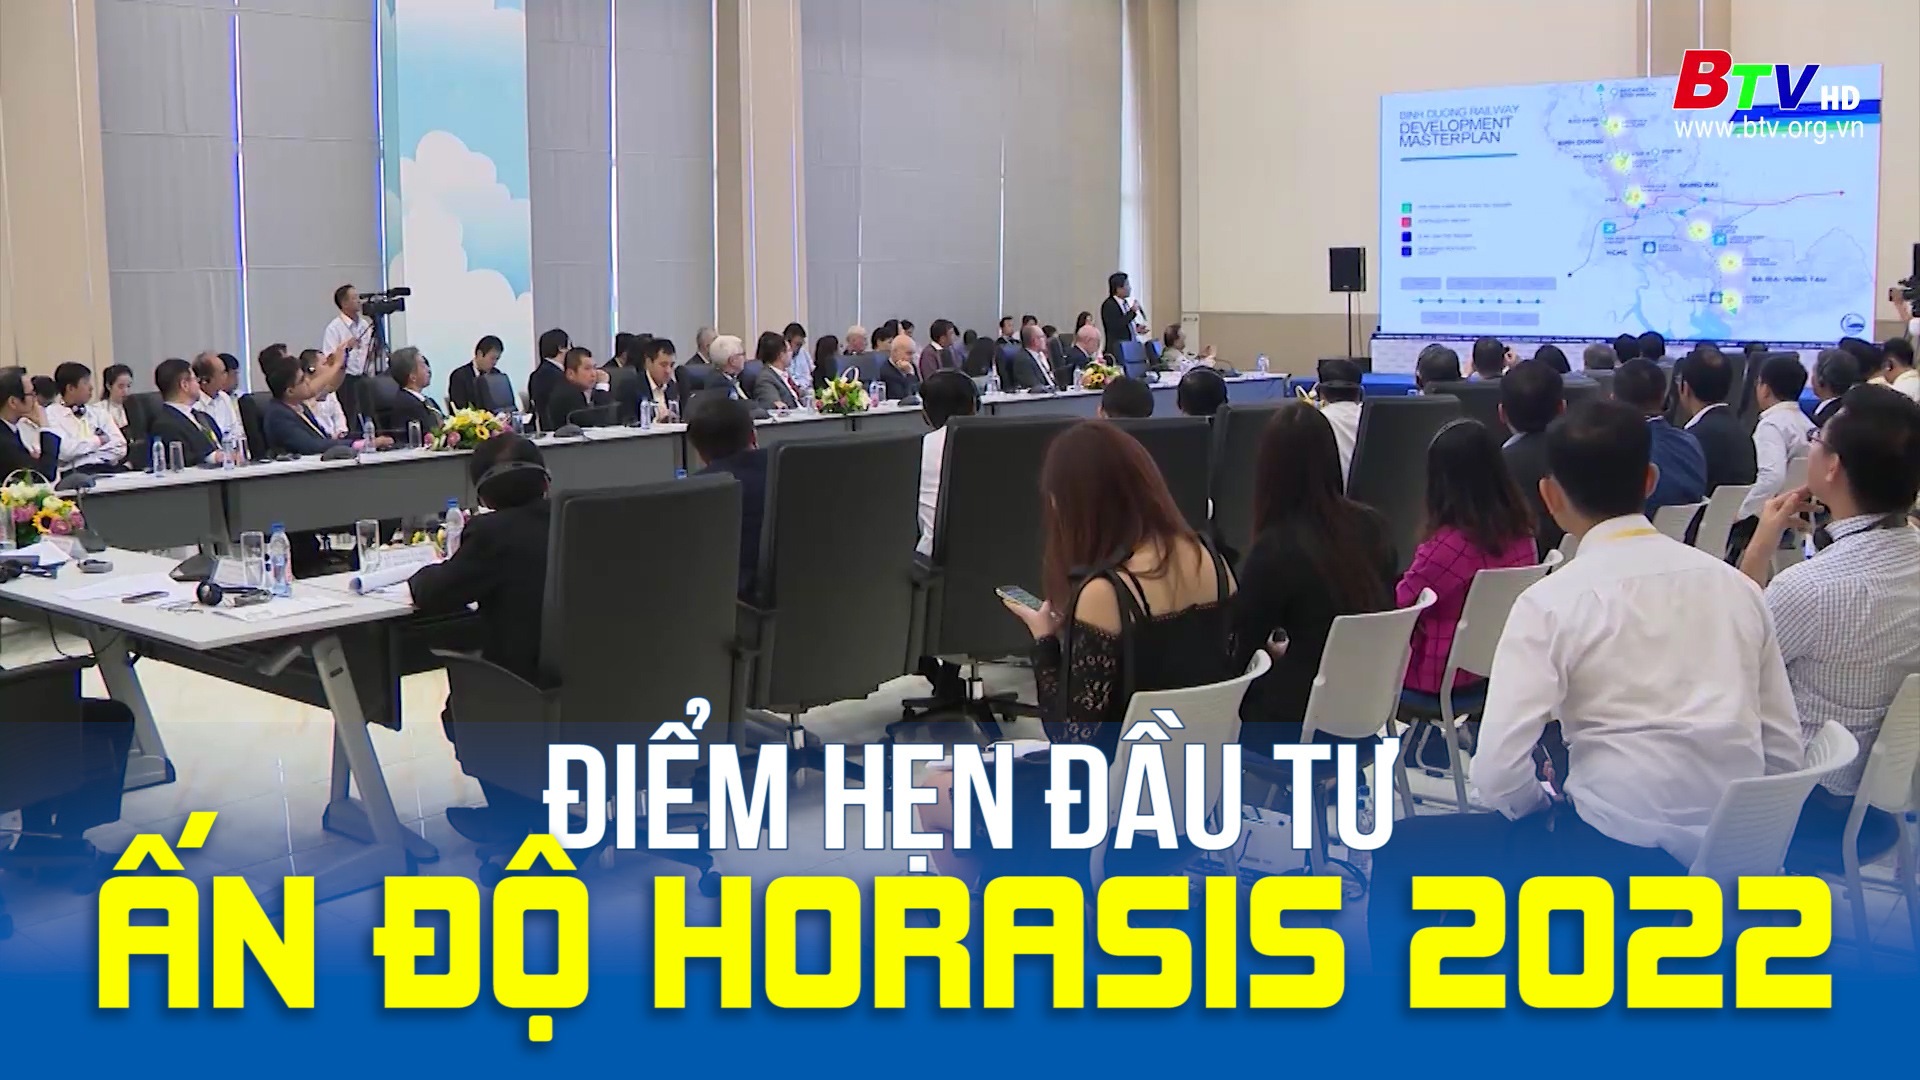 Ấn Độ Horasis 2022: Điểm hẹn đầu tư